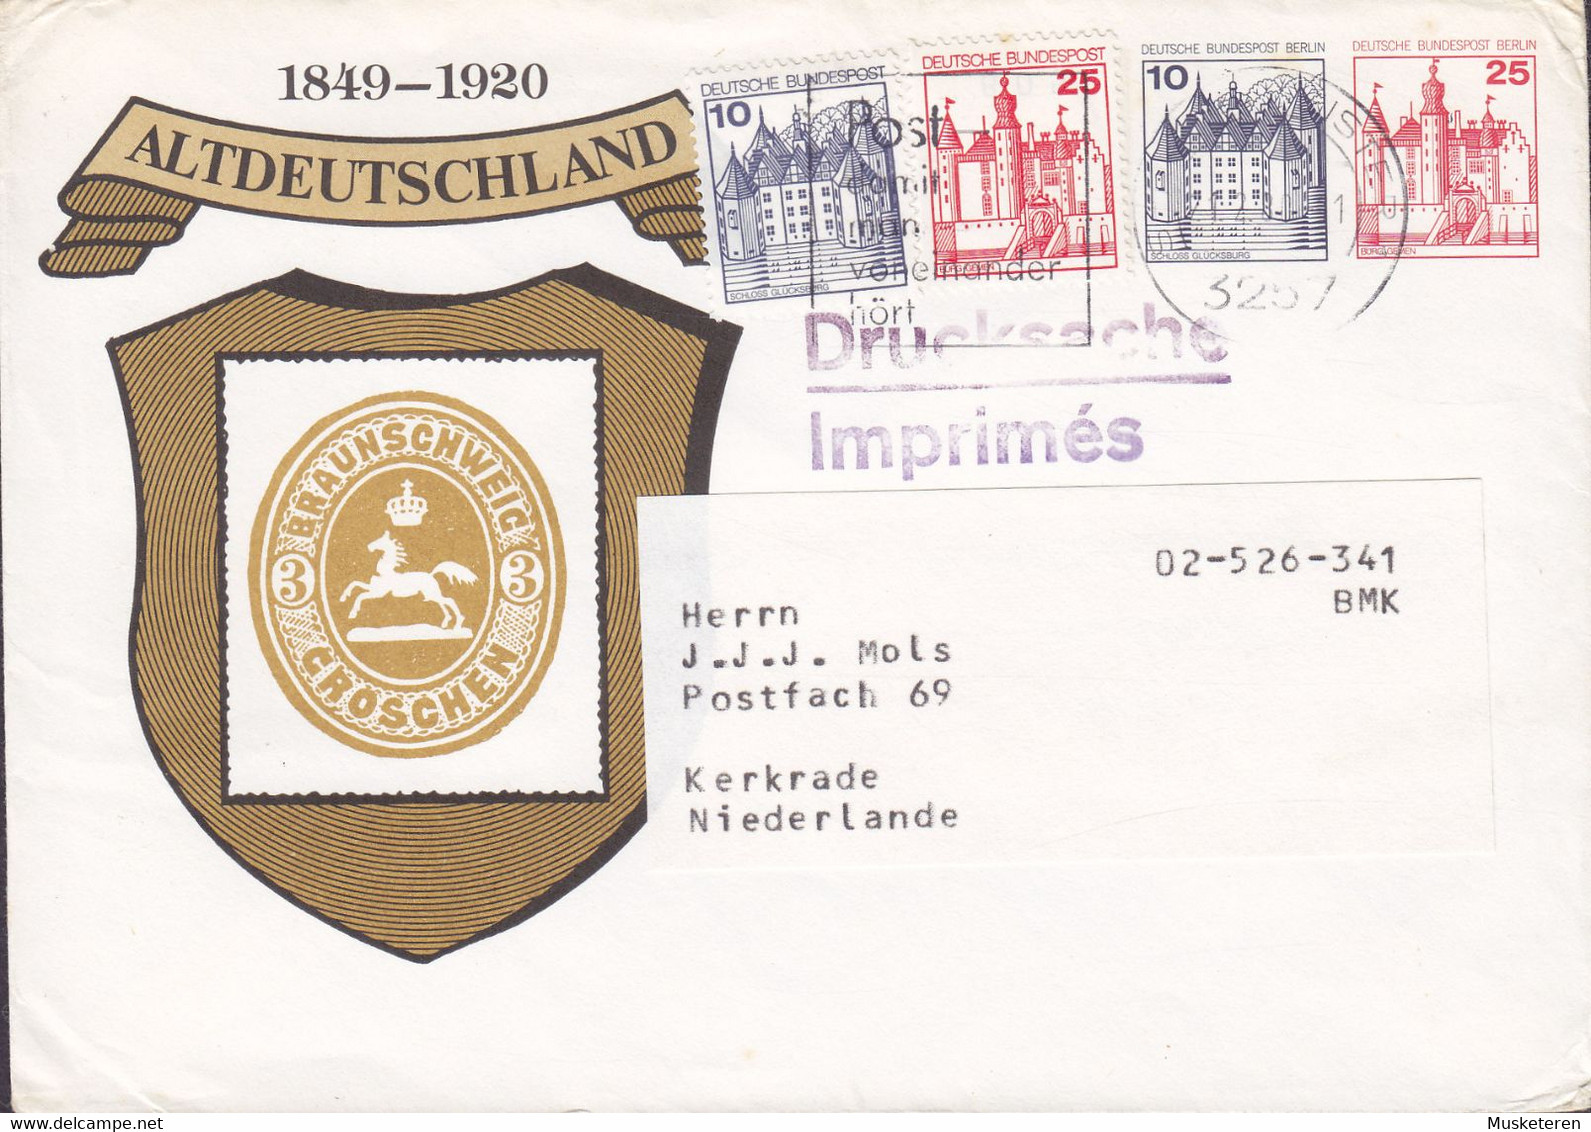 Berlin Uprated Postal Stationery Ganzsache ALTDEUTSCHLAND 1849-1920 PRIVATE Print Cachet 1980 KERKRADE Netherlands - Privatumschläge - Gebraucht